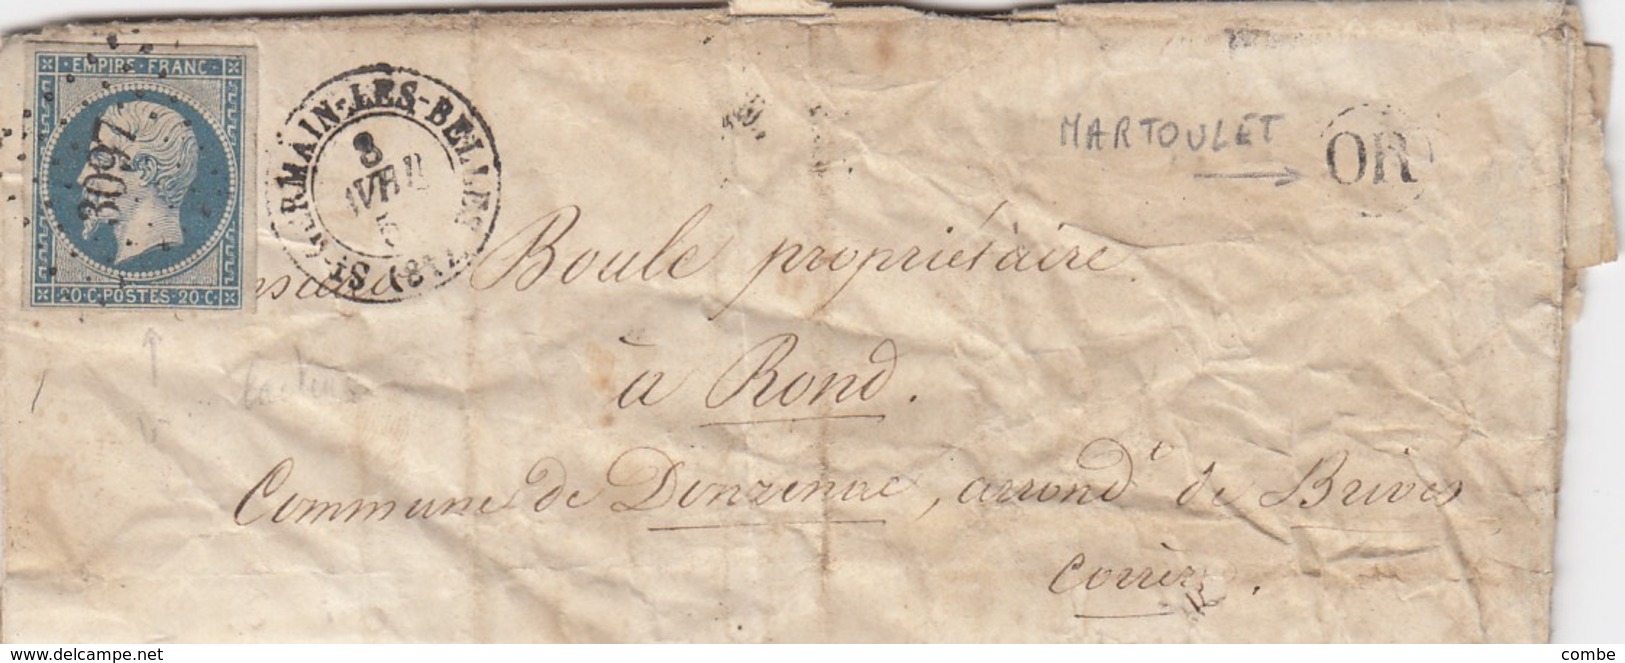 LETTRE. 8 AVRIL 55. HAUTE-VIENNE St GERMAIN-LES-BELLES. PC3097 . ORIGINE RURALE OR = MARTOULET / 1 - 1849-1876: Klassik